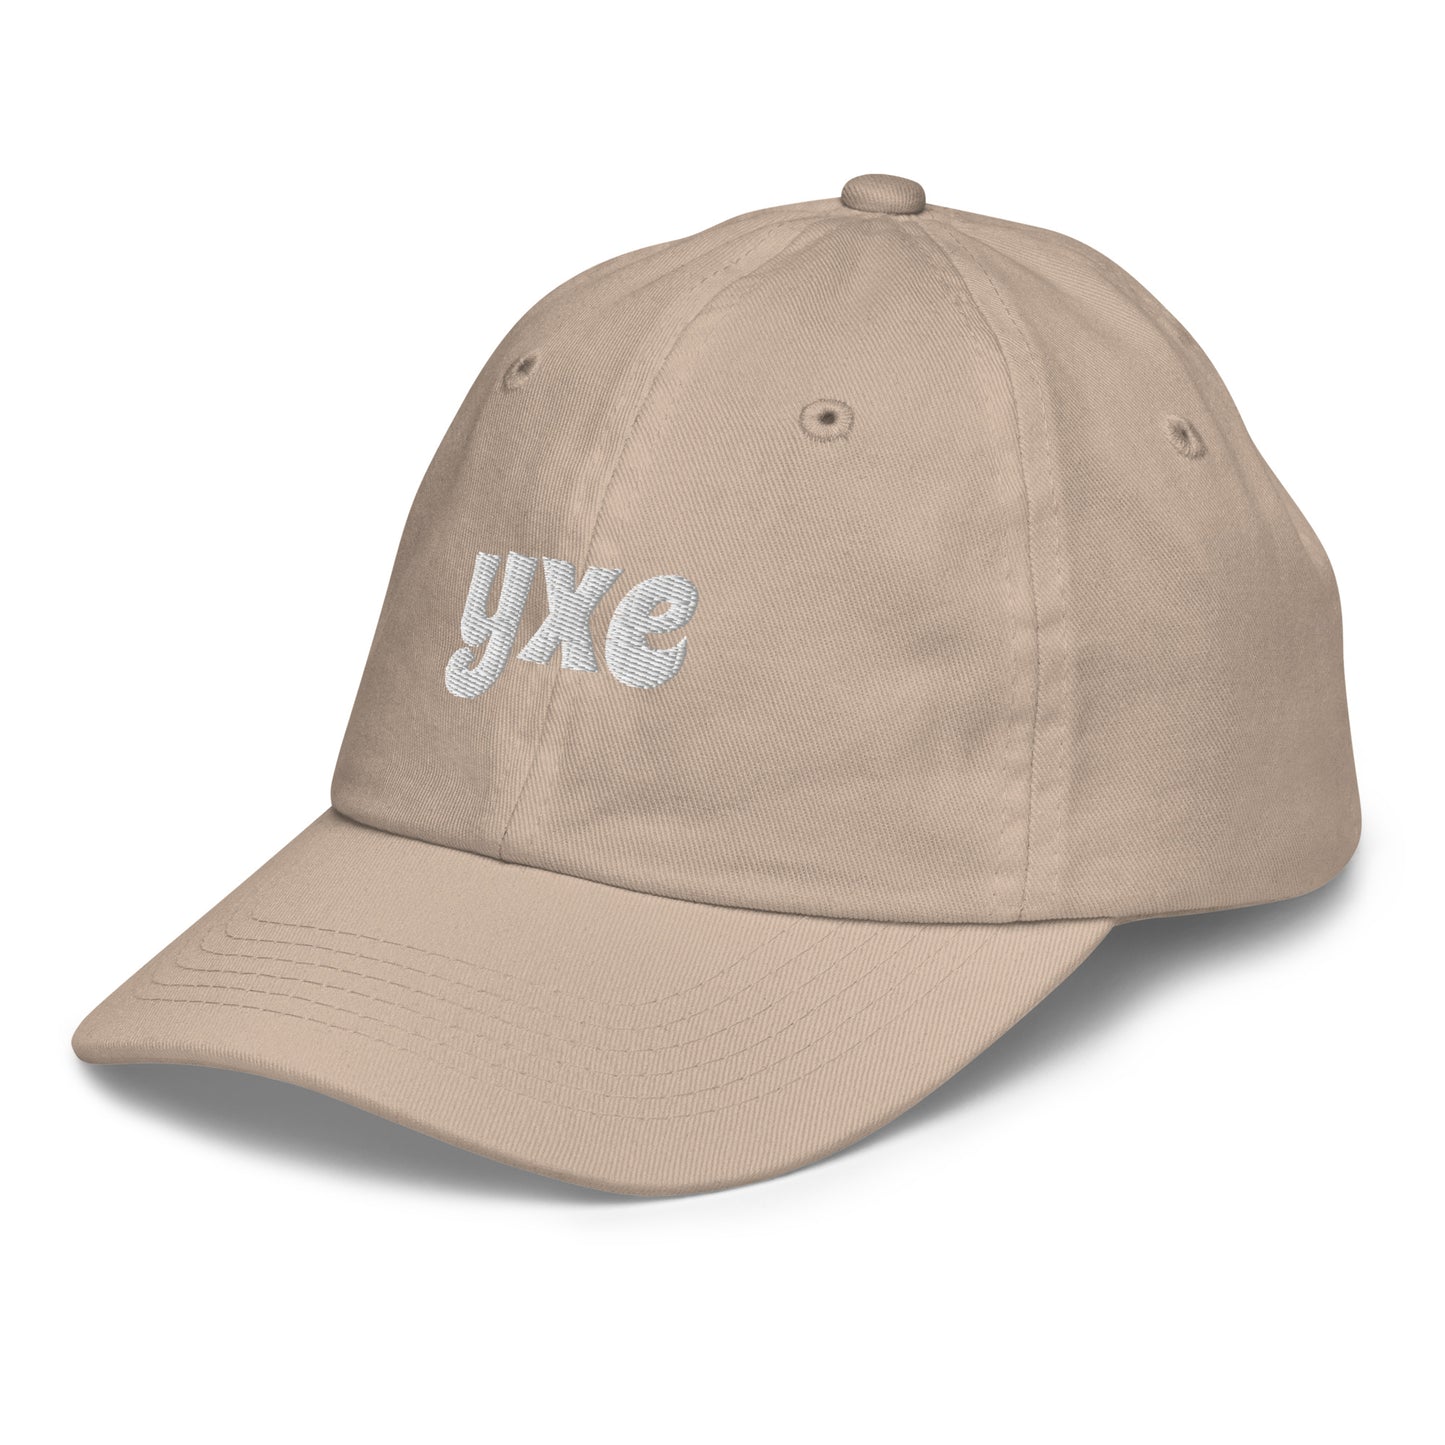 Groovy Kid's Baseball Cap - White • YXE Saskatoon • YHM Designs - Image 22